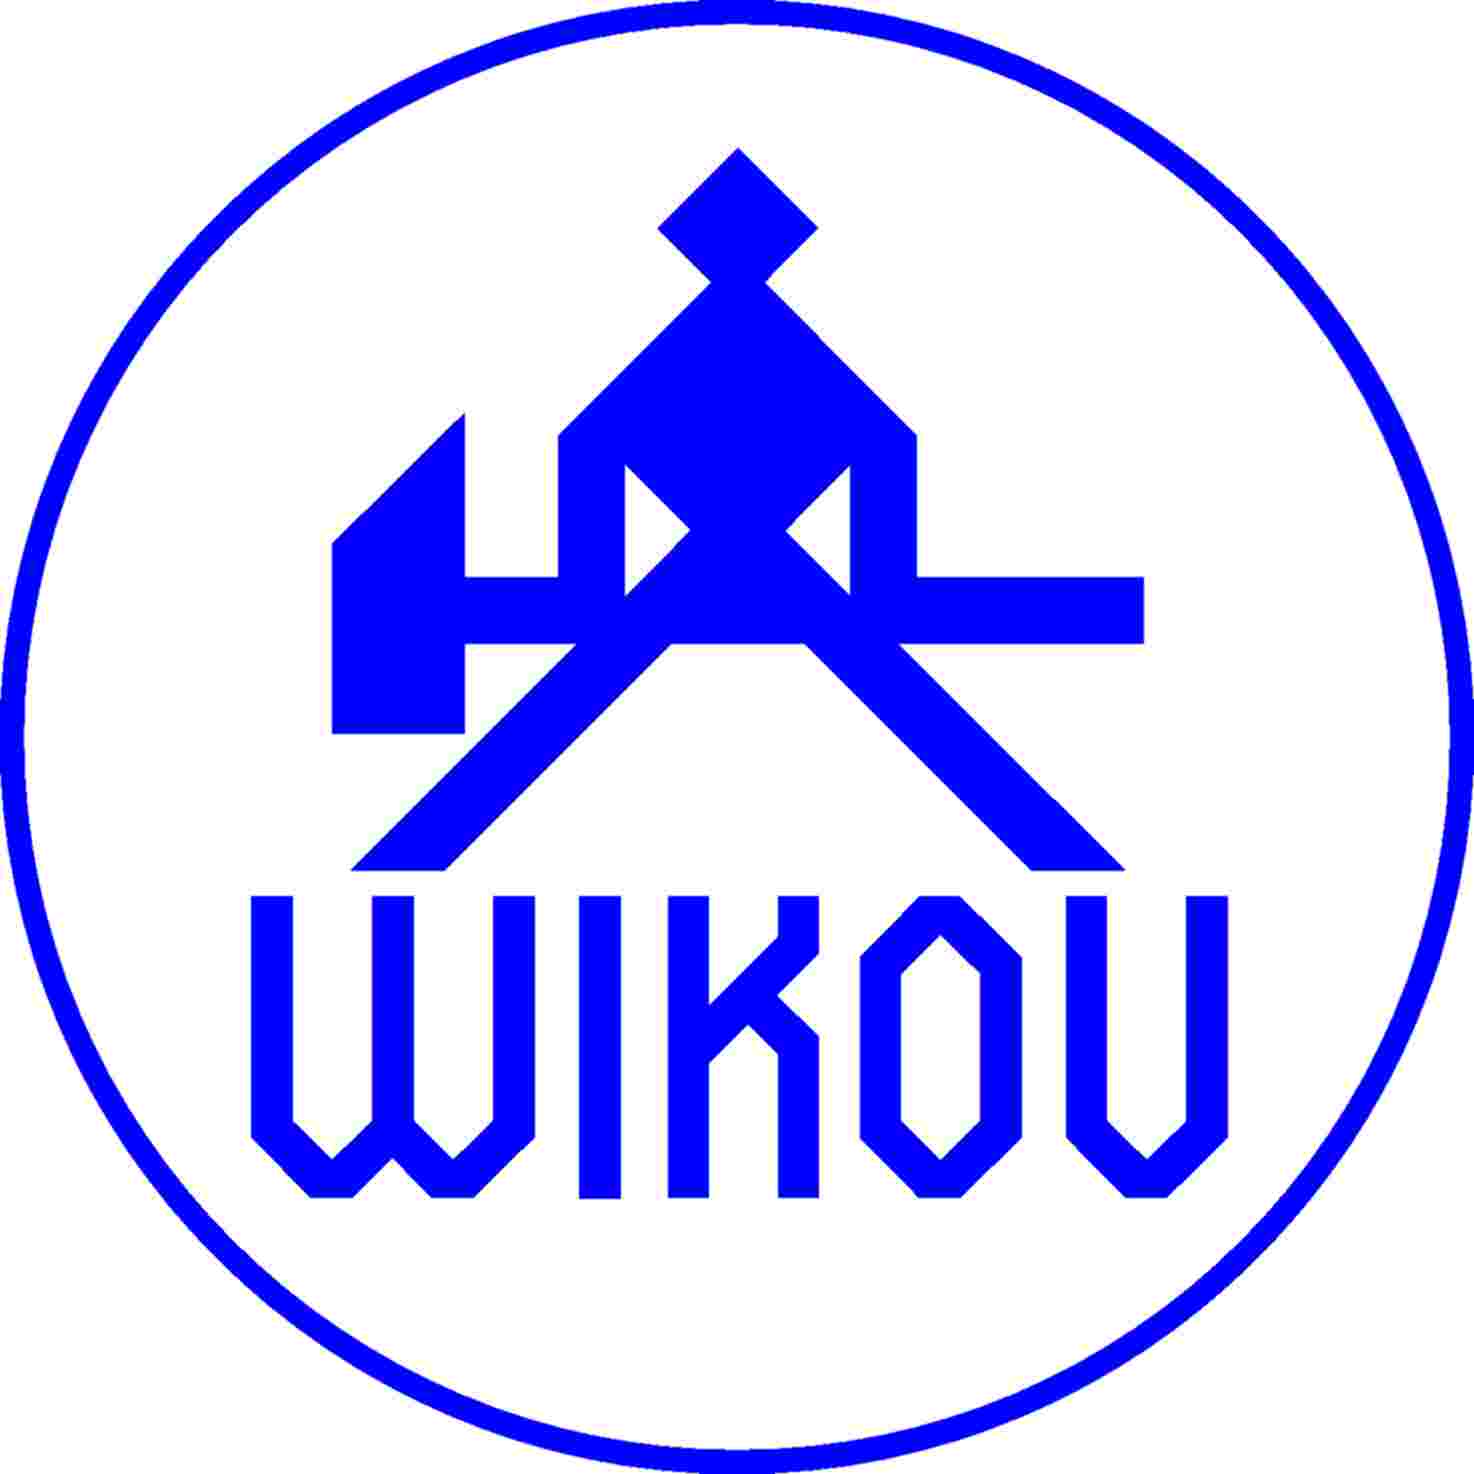 Wikov